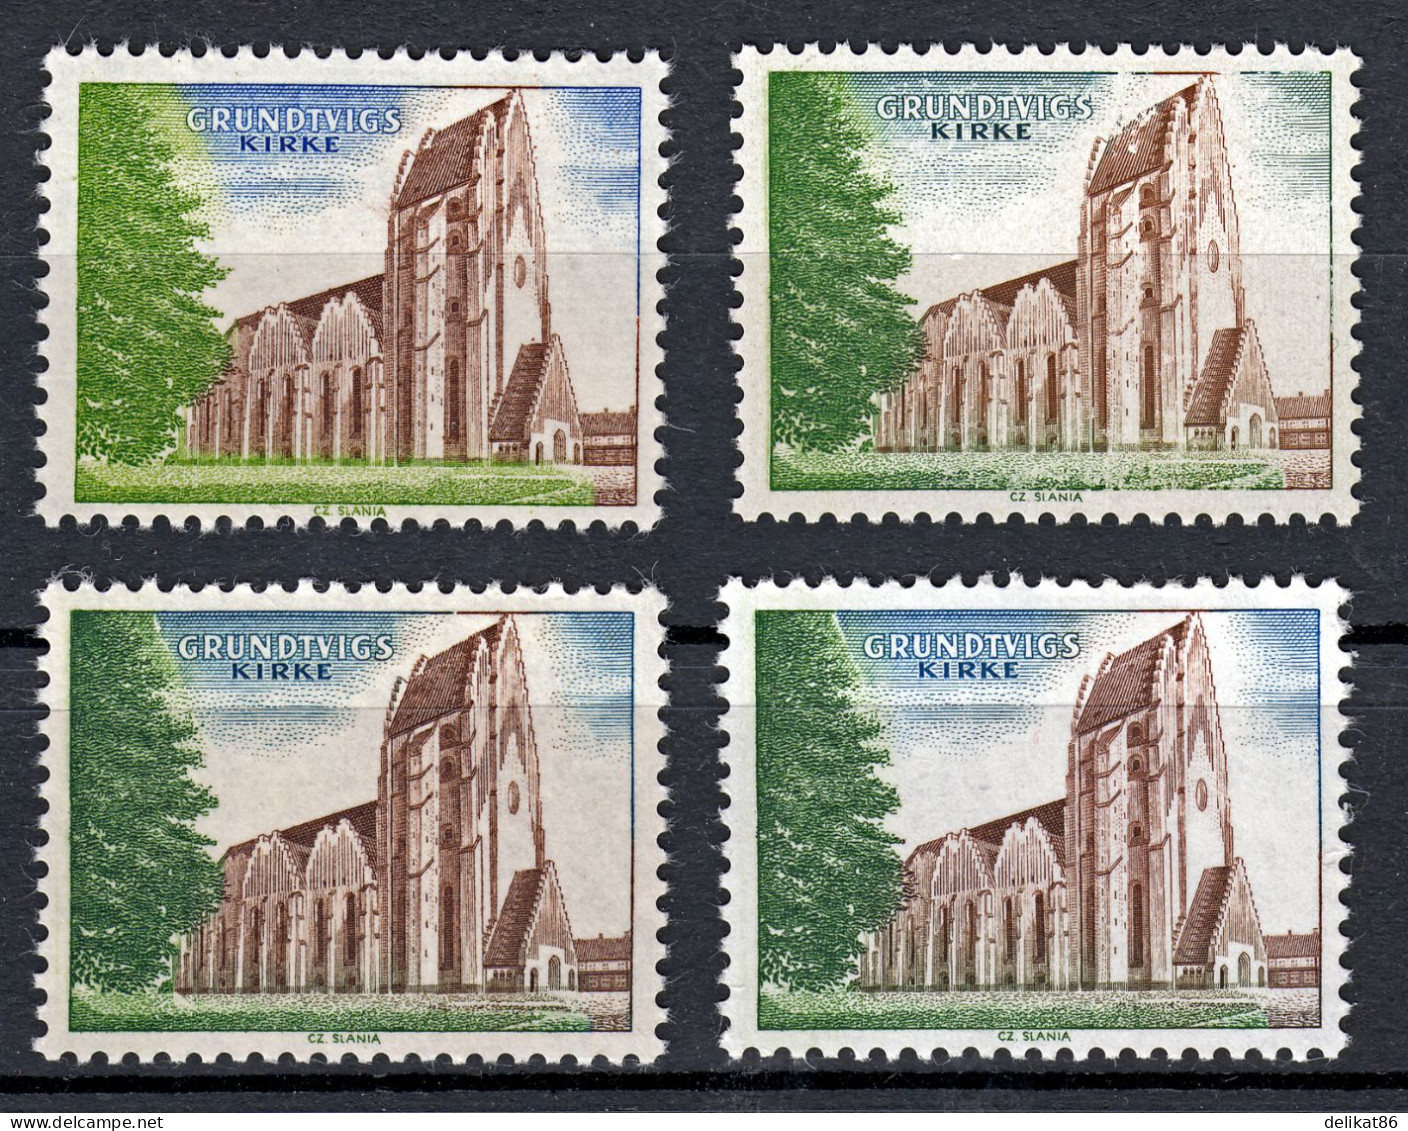 Probedruck Test Stamp Specimen Prøve Grundtvig Kirke Slania 1968   4 Verschiedene Marken - Proeven & Herdrukken